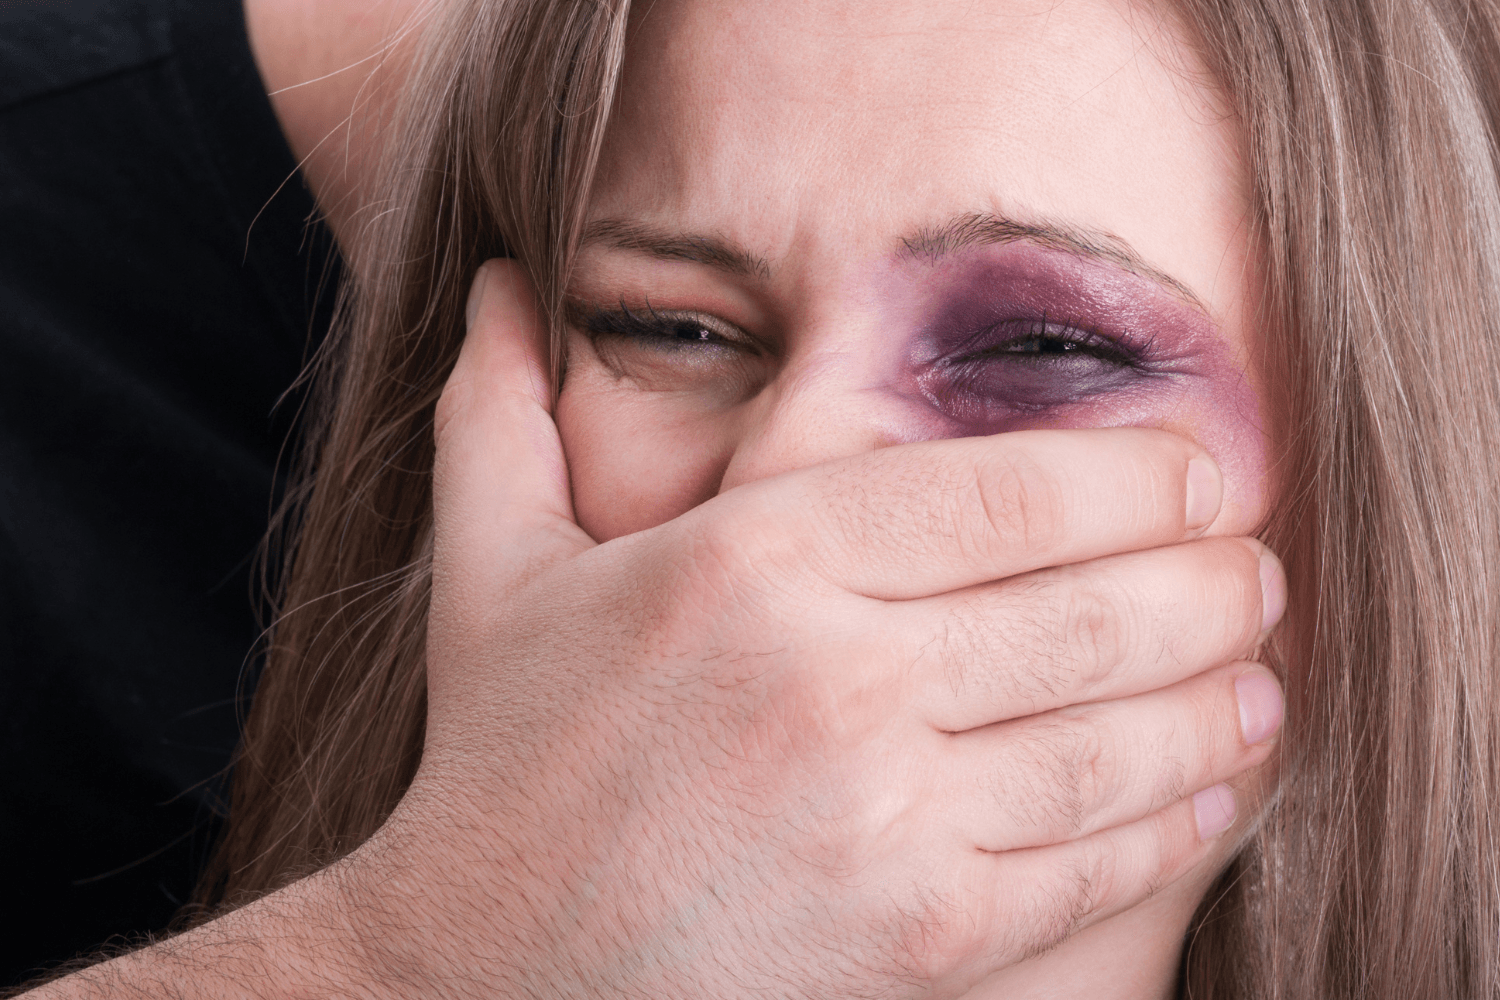 Reconnaître la violence dans un couple, sortir du déni et ne plus croire que le conjoint abusif va changer sont des étapes importantes pour sortir des violences conjugales.